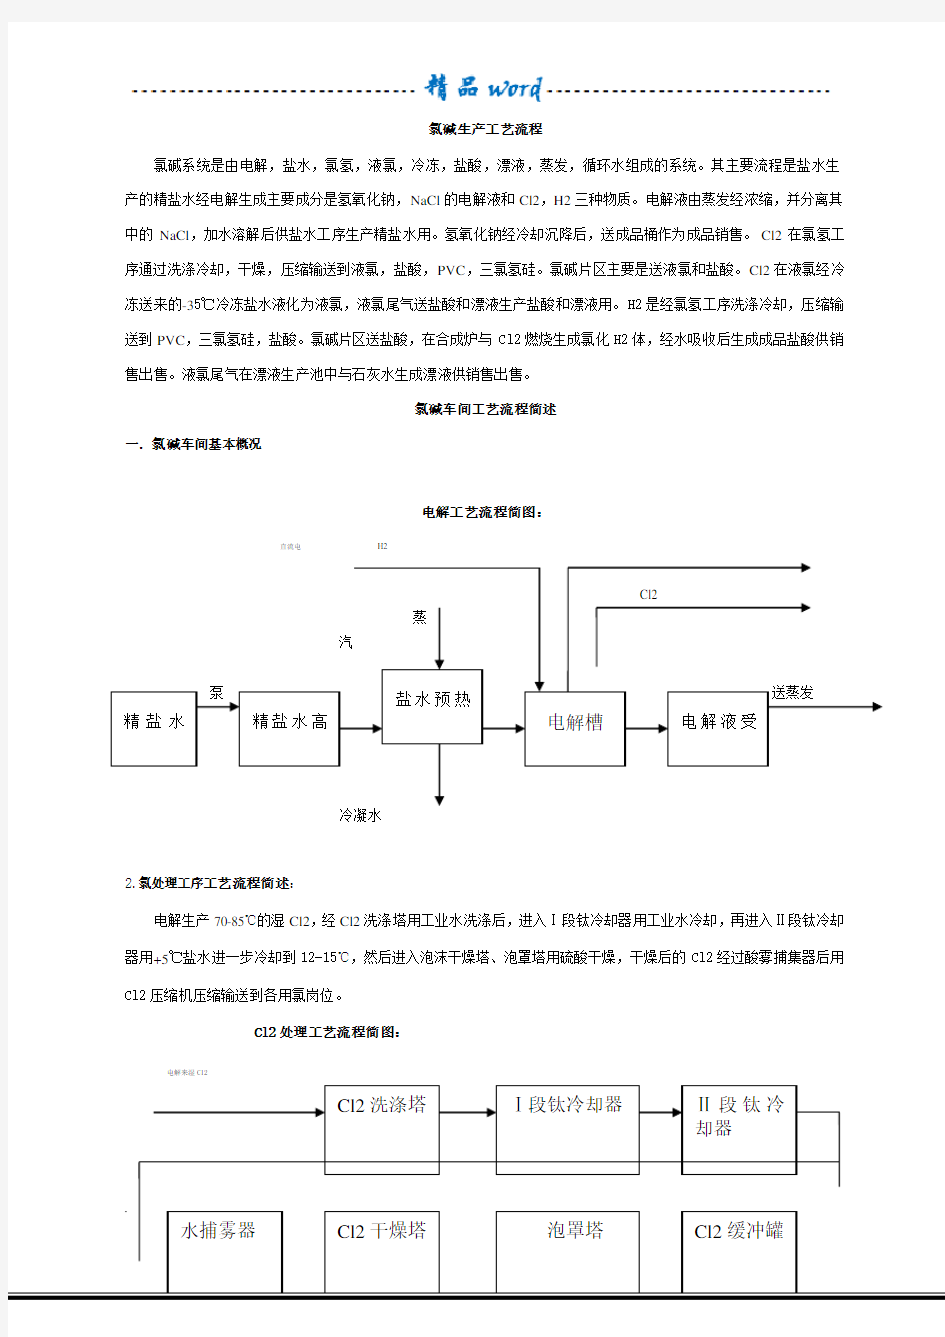 氯碱生产工艺流程 (1)